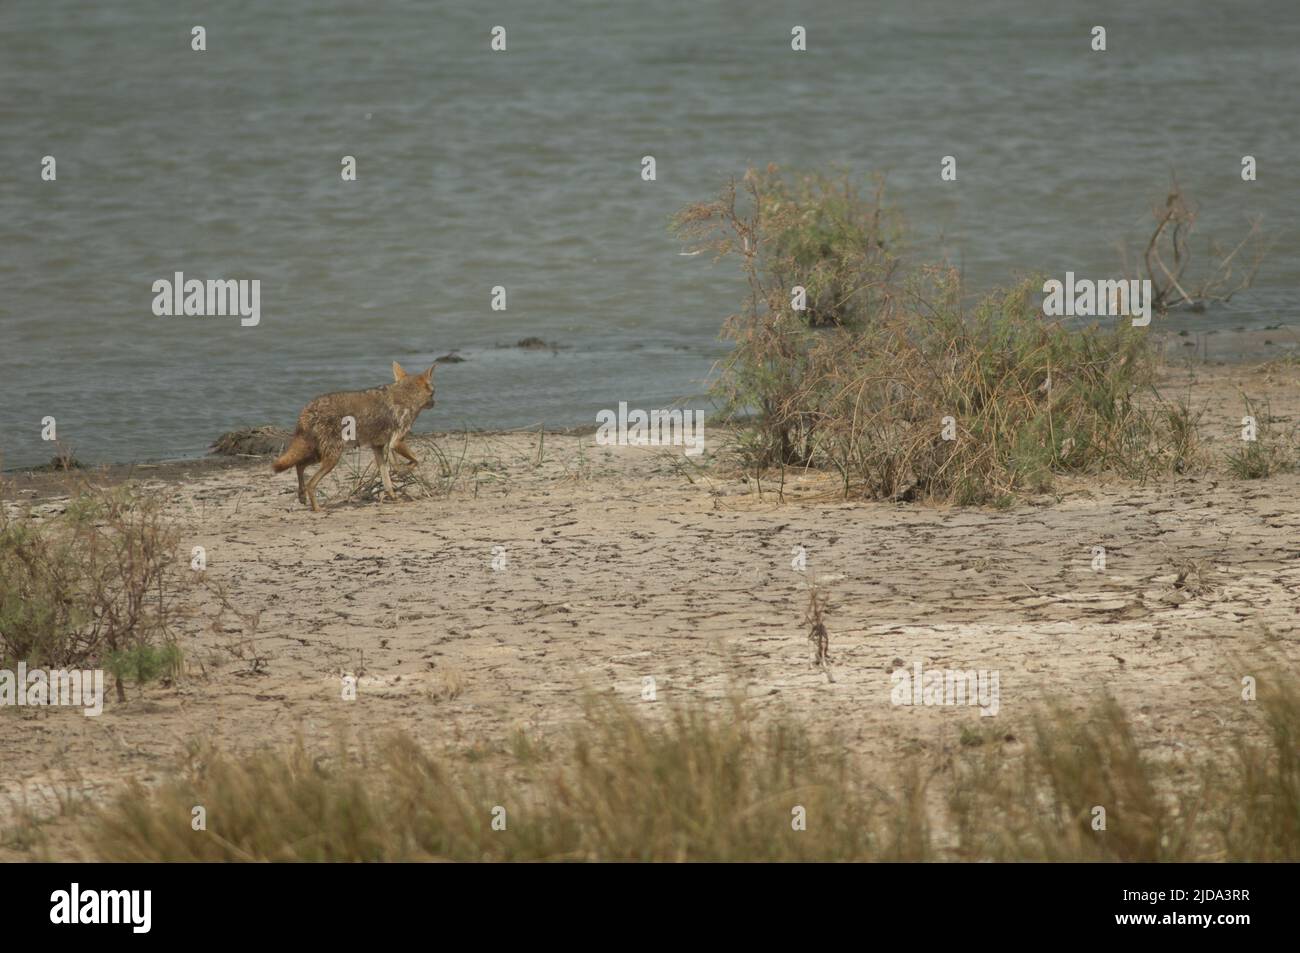 Lupo d'oro africano Canis lupo. Parco Nazionale di Oiseaux du Djoudj. Saint-Louis. Senegal. Foto Stock